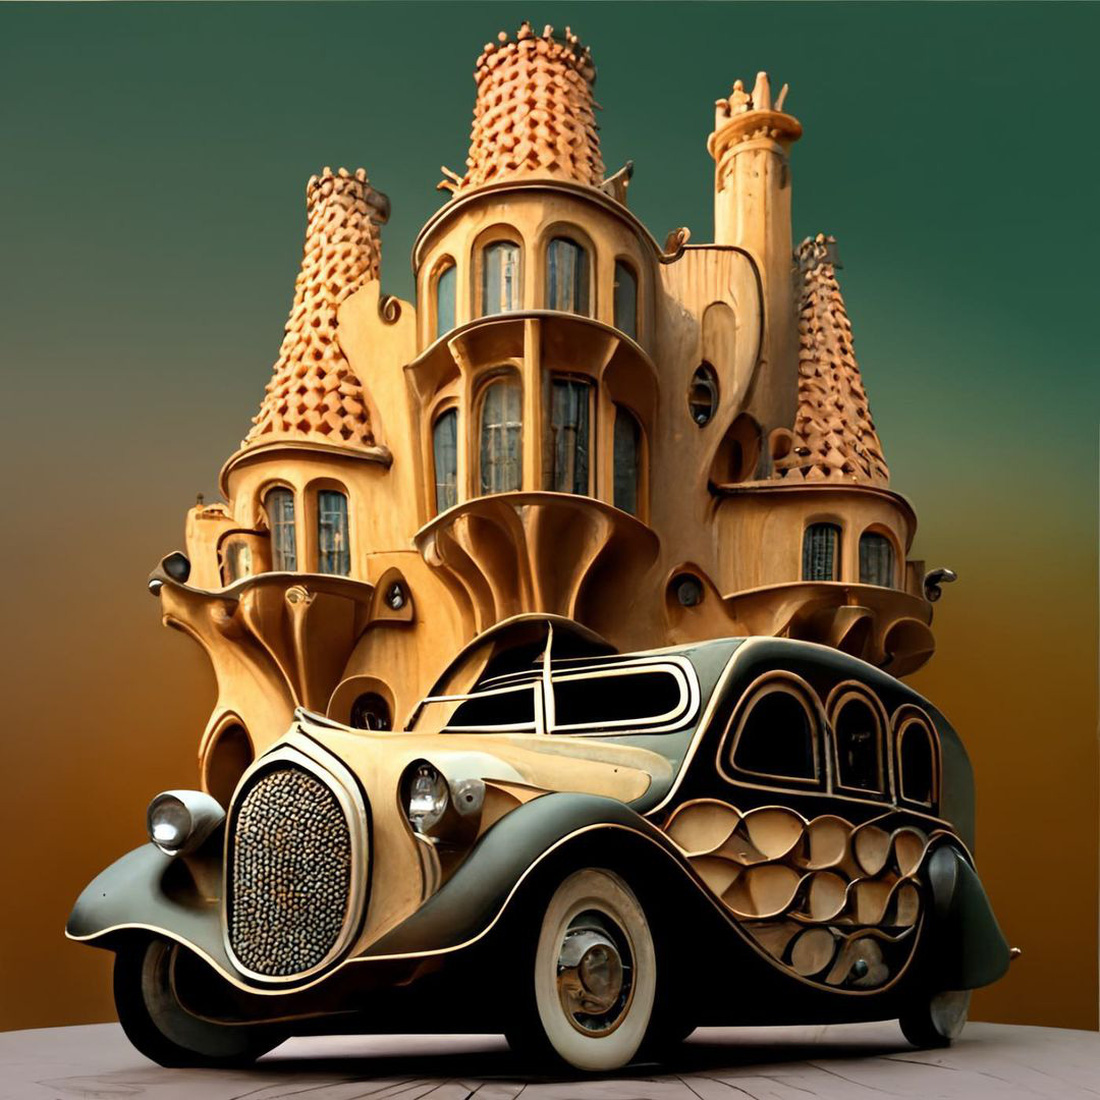 Chùm ảnh trí tuệ nhân tạo thiết kế ô tô mô phỏng các công trình kiến trúc độc đáo - Ảnh 4.